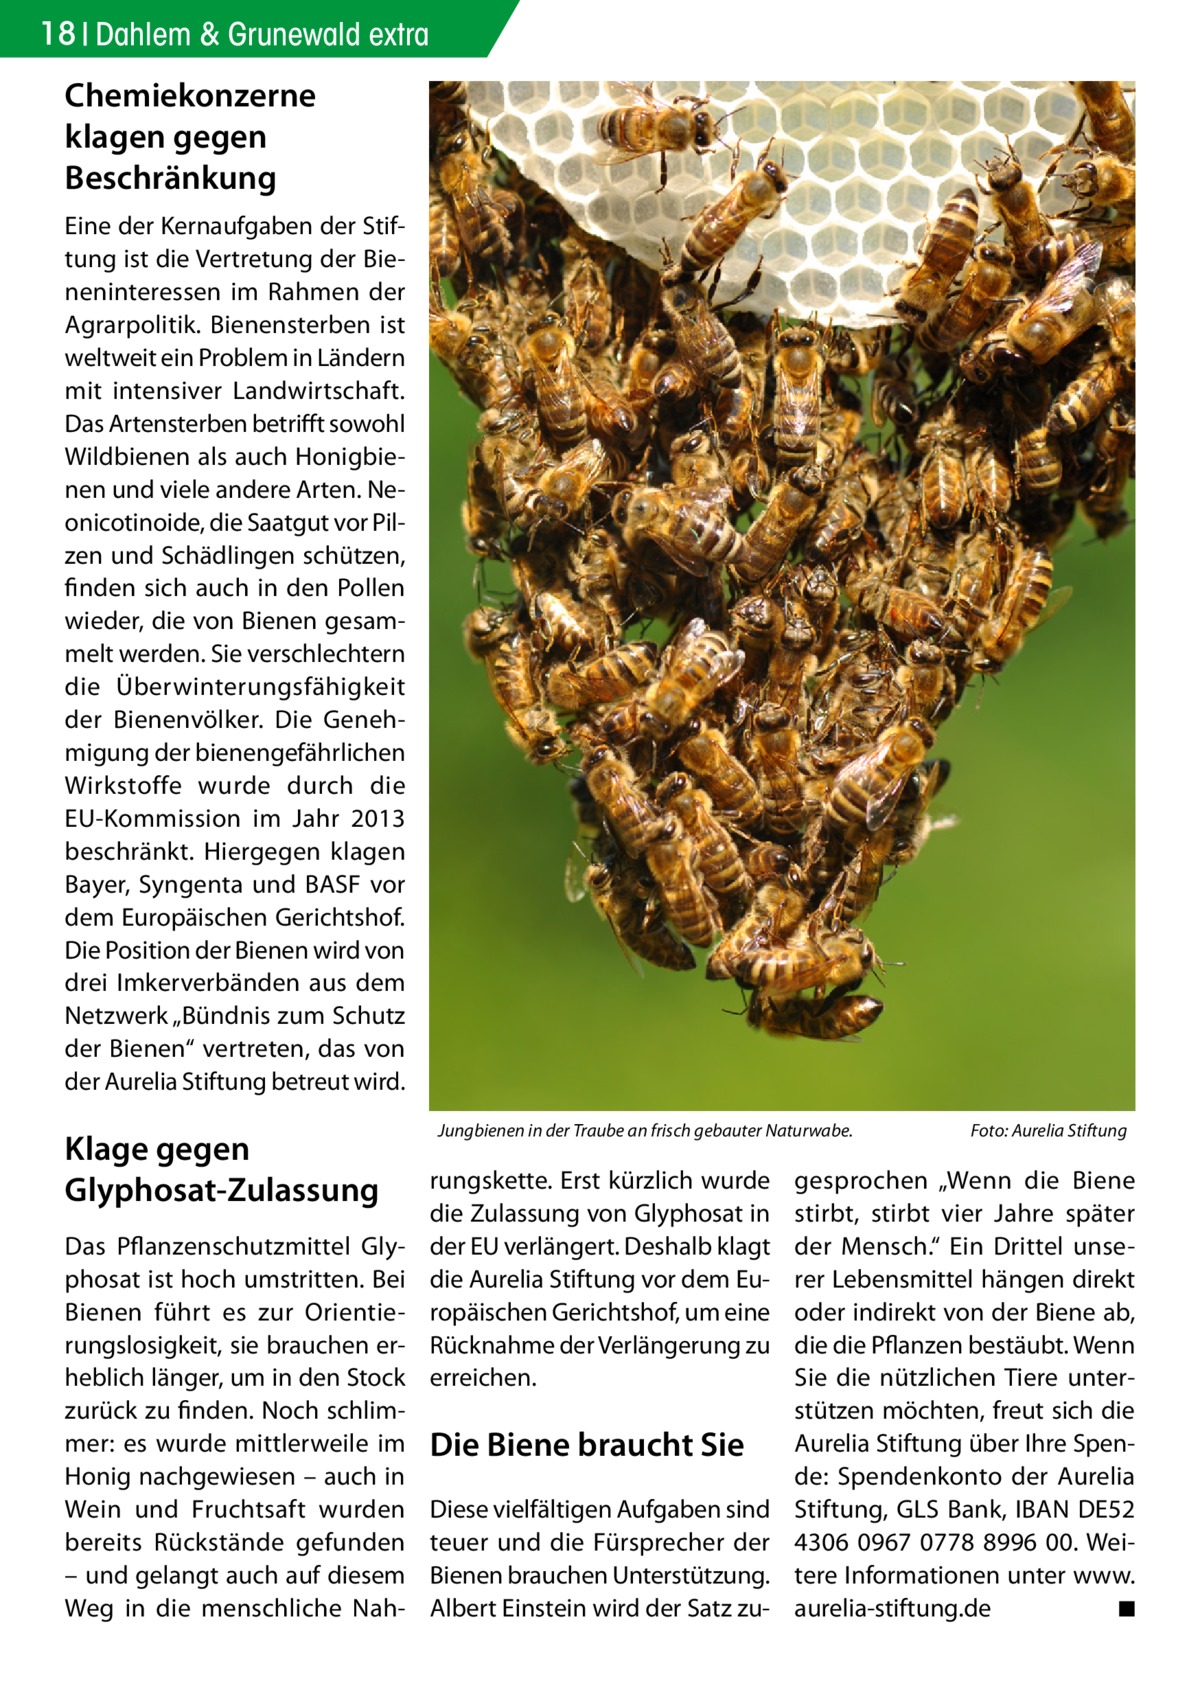 18 Dahlem & Grunewald extra  Chemiekonzerne klagen gegen Beschränkung Eine der Kernaufgaben der Stiftung ist die Vertretung der Bieneninteressen im Rahmen der Agrarpolitik. Bienensterben ist weltweit ein Problem in Ländern mit intensiver Landwirtschaft. Das Artensterben betrifft sowohl Wildbienen als auch Honigbienen und viele andere Arten. Neonicotinoide, die Saatgut vor Pilzen und Schädlingen schützen, finden sich auch in den Pollen wieder, die von Bienen gesammelt werden. Sie verschlechtern die Überwinterungsfähigkeit der Bienenvölker. Die Genehmigung der bienengefährlichen Wirkstoffe wurde durch die EU-Kommission im Jahr 2013 beschränkt. Hiergegen klagen Bayer, Syngenta und BASF vor dem Europäischen Gerichtshof. Die Position der Bienen wird von drei Imkerverbänden aus dem Netzwerk „Bündnis zum Schutz der Bienen“ vertreten, das von der Aurelia Stiftung betreut wird.  Klage gegen Glyphosat-Zulassung Das Pflanzenschutzmittel Glyphosat ist hoch umstritten. Bei Bienen führt es zur Orientierungslosigkeit, sie brauchen erheblich länger, um in den Stock zurück zu finden. Noch schlimmer: es wurde mittlerweile im Honig nachgewiesen – auch in Wein und Fruchtsaft wurden bereits Rückstände gefunden – und gelangt auch auf diesem Weg in die menschliche Nah Jungbienen in der Traube an frisch gebauter Naturwabe.�  rungskette. Erst kürzlich wurde die Zulassung von Glyphosat in der EU verlängert. Deshalb klagt die Aurelia Stiftung vor dem Europäischen Gerichtshof, um eine Rücknahme der Verlängerung zu erreichen.  Die Biene braucht Sie Diese vielfältigen Aufgaben sind teuer und die Fürsprecher der Bienen brauchen Unterstützung. Albert Einstein wird der Satz zu Foto: Aurelia Stiftung  gesprochen „Wenn die Biene stirbt, stirbt vier Jahre später der Mensch.“ Ein Drittel unserer Lebensmittel hängen direkt oder indirekt von der Biene ab, die die Pflanzen bestäubt. Wenn Sie die nützlichen Tiere unterstützen möchten, freut sich die Aurelia Stiftung über Ihre Spende: Spendenkonto der Aurelia Stiftung, GLS Bank, IBAN DE52 4306 0967 0778 8996 00. Weitere Informationen unter www. aurelia-stiftung.de � ◾